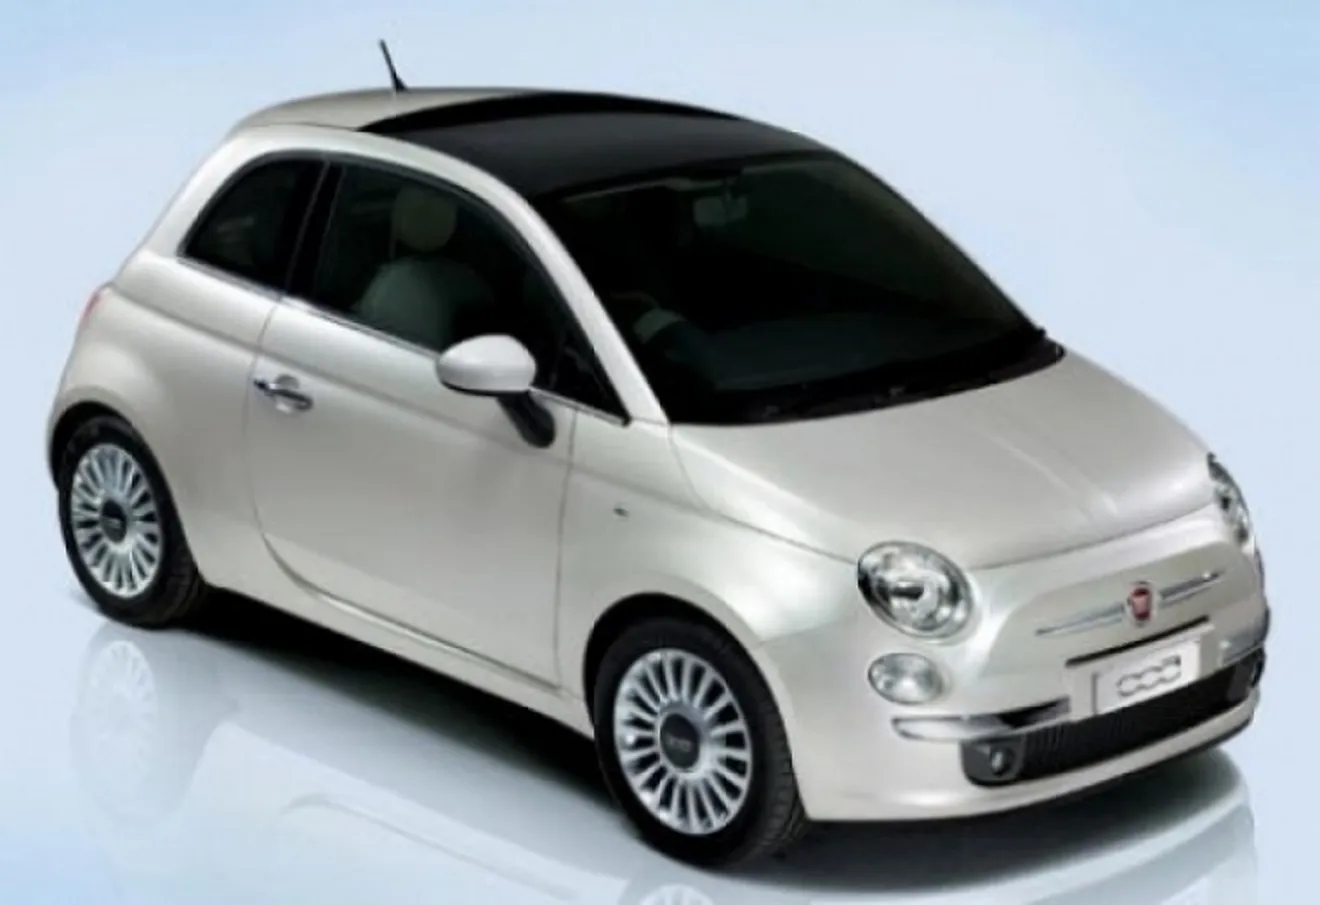 Fiat construiría coches híbridos